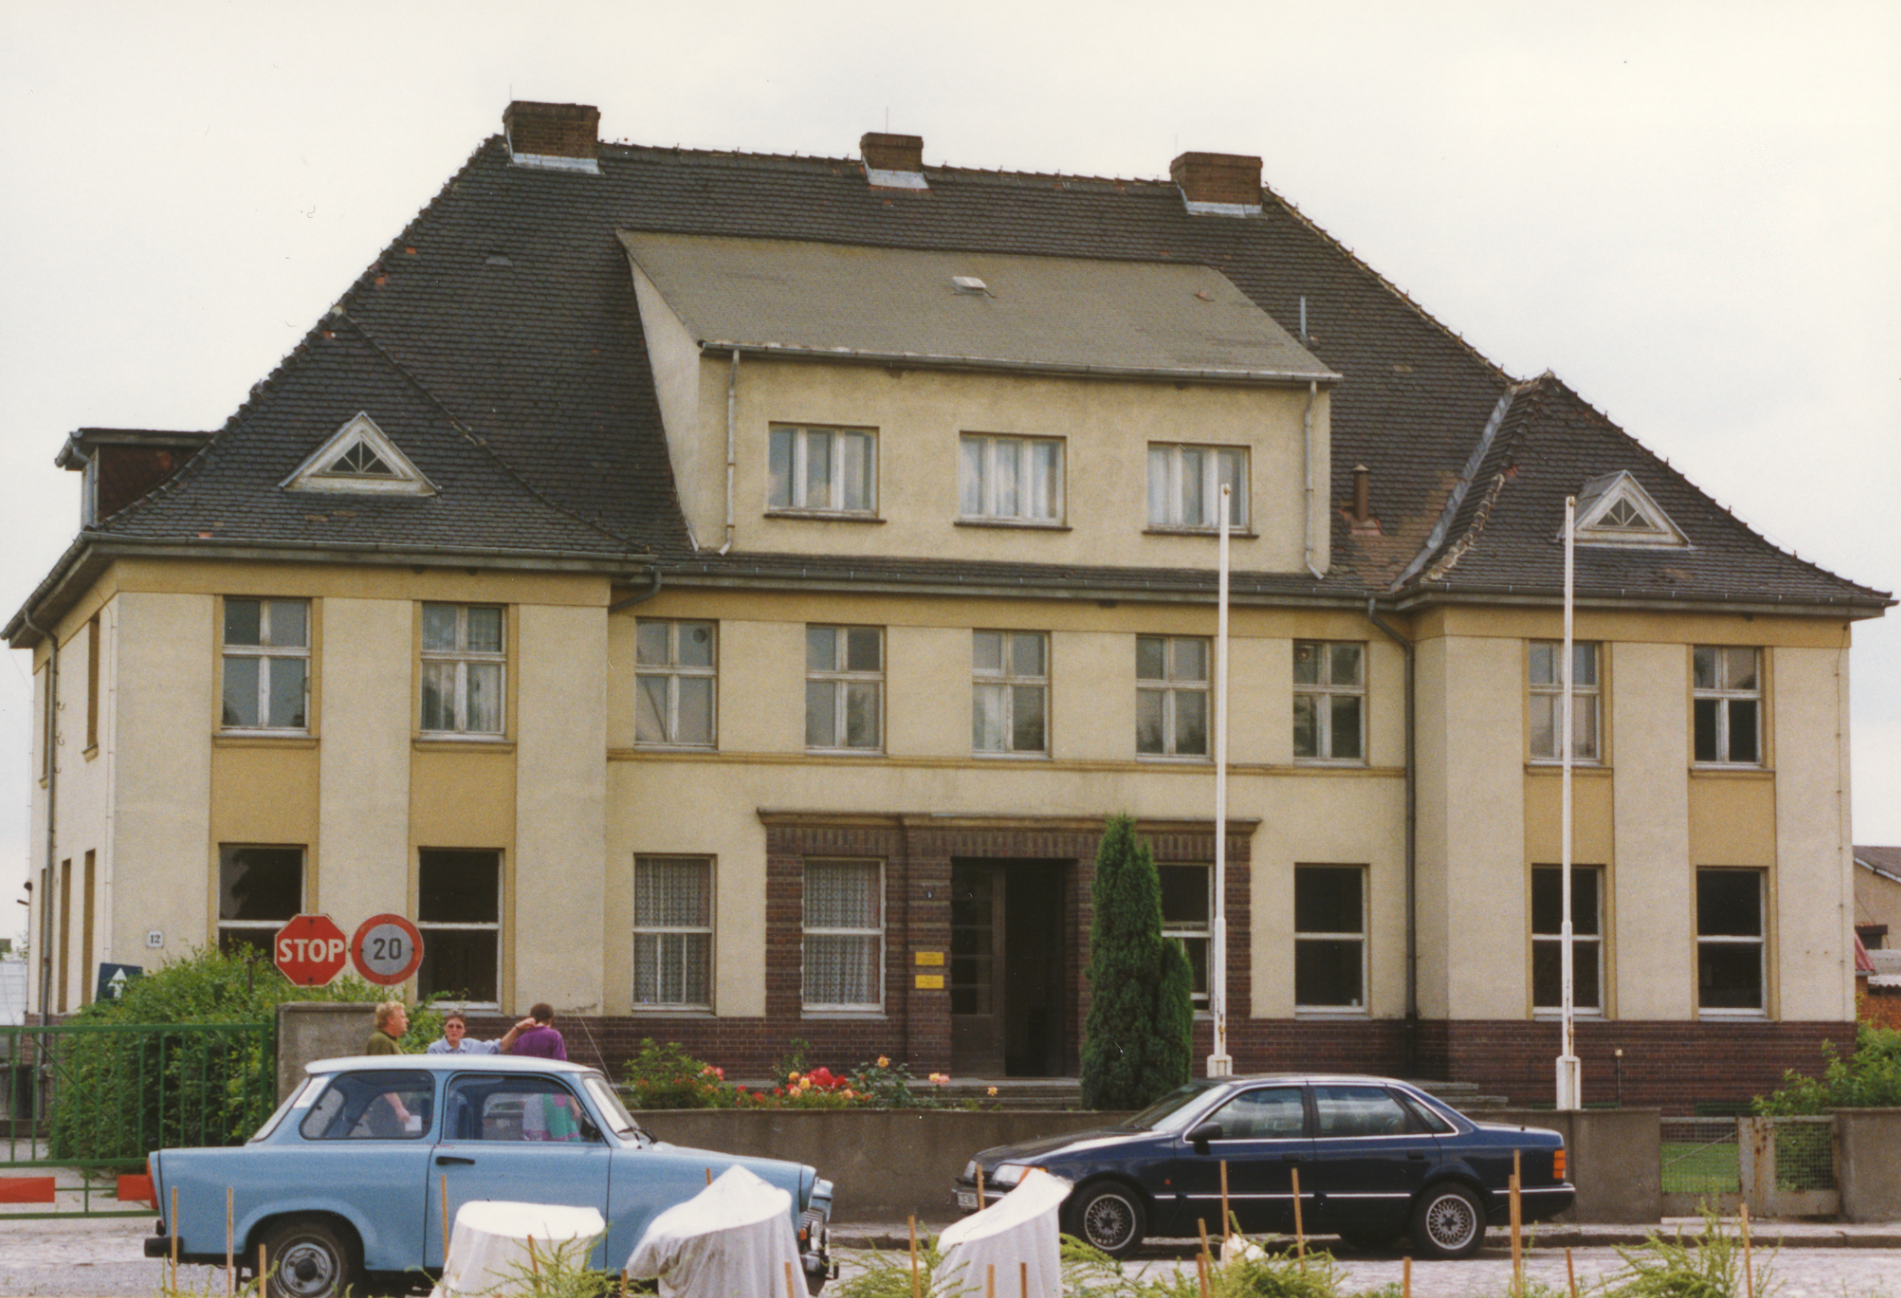 Instituto de fitomejoramiento en Klein Wanzleben, establecido en 1930, actualmente edificio administrativo de la estación de mejoramiento